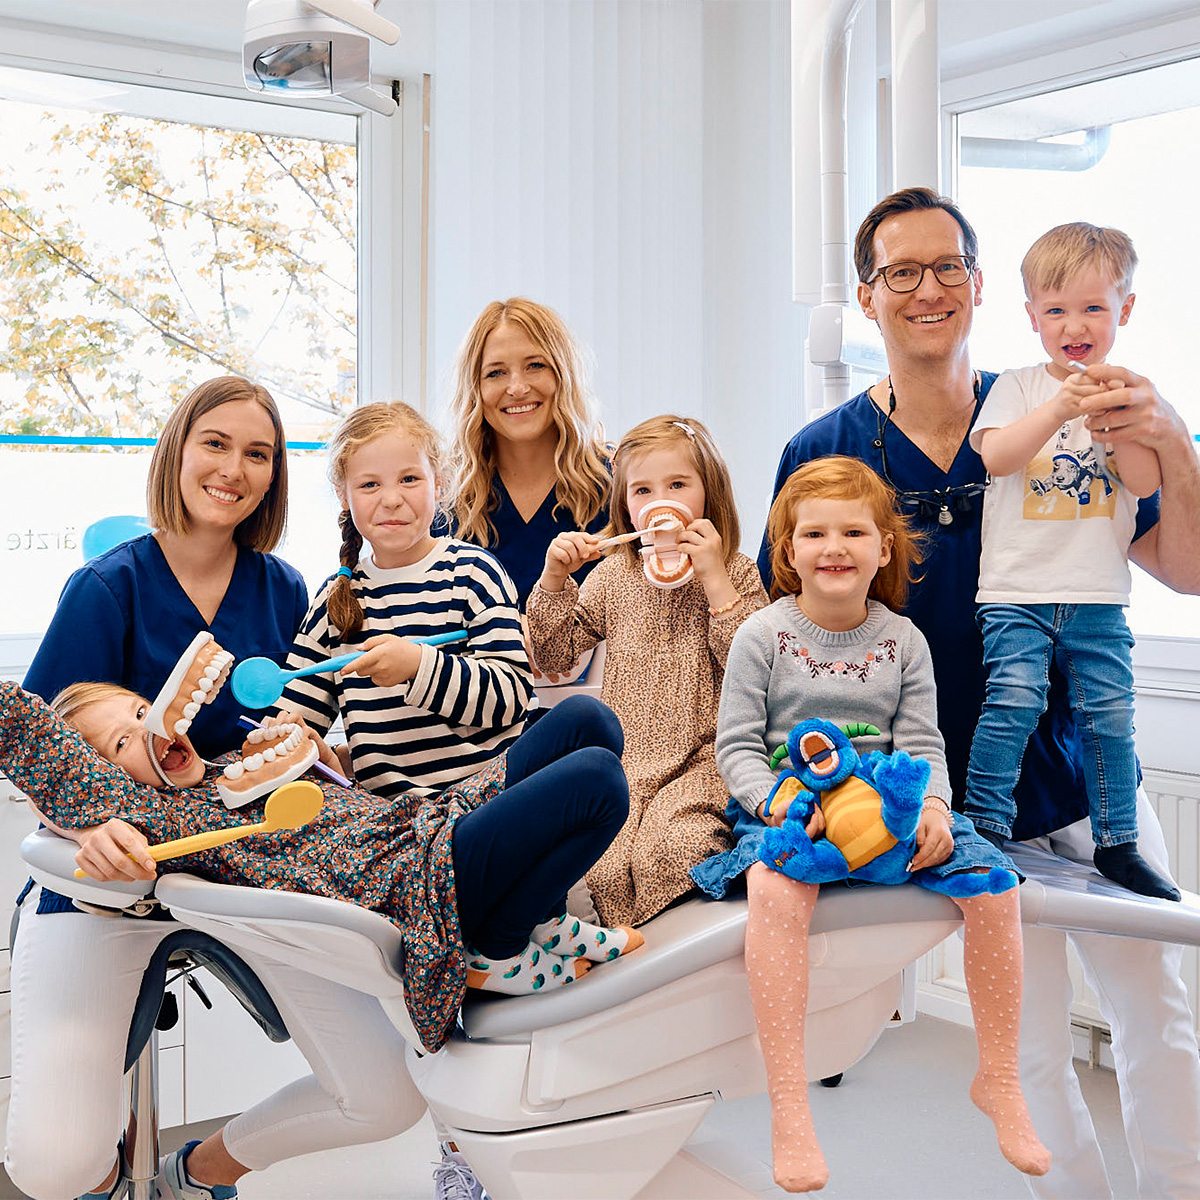 Kinderzahnheilkunde in der Zahnarztpraxis Pfau in Rottweil - Gruppenbild der Zahnärzte und Kindern